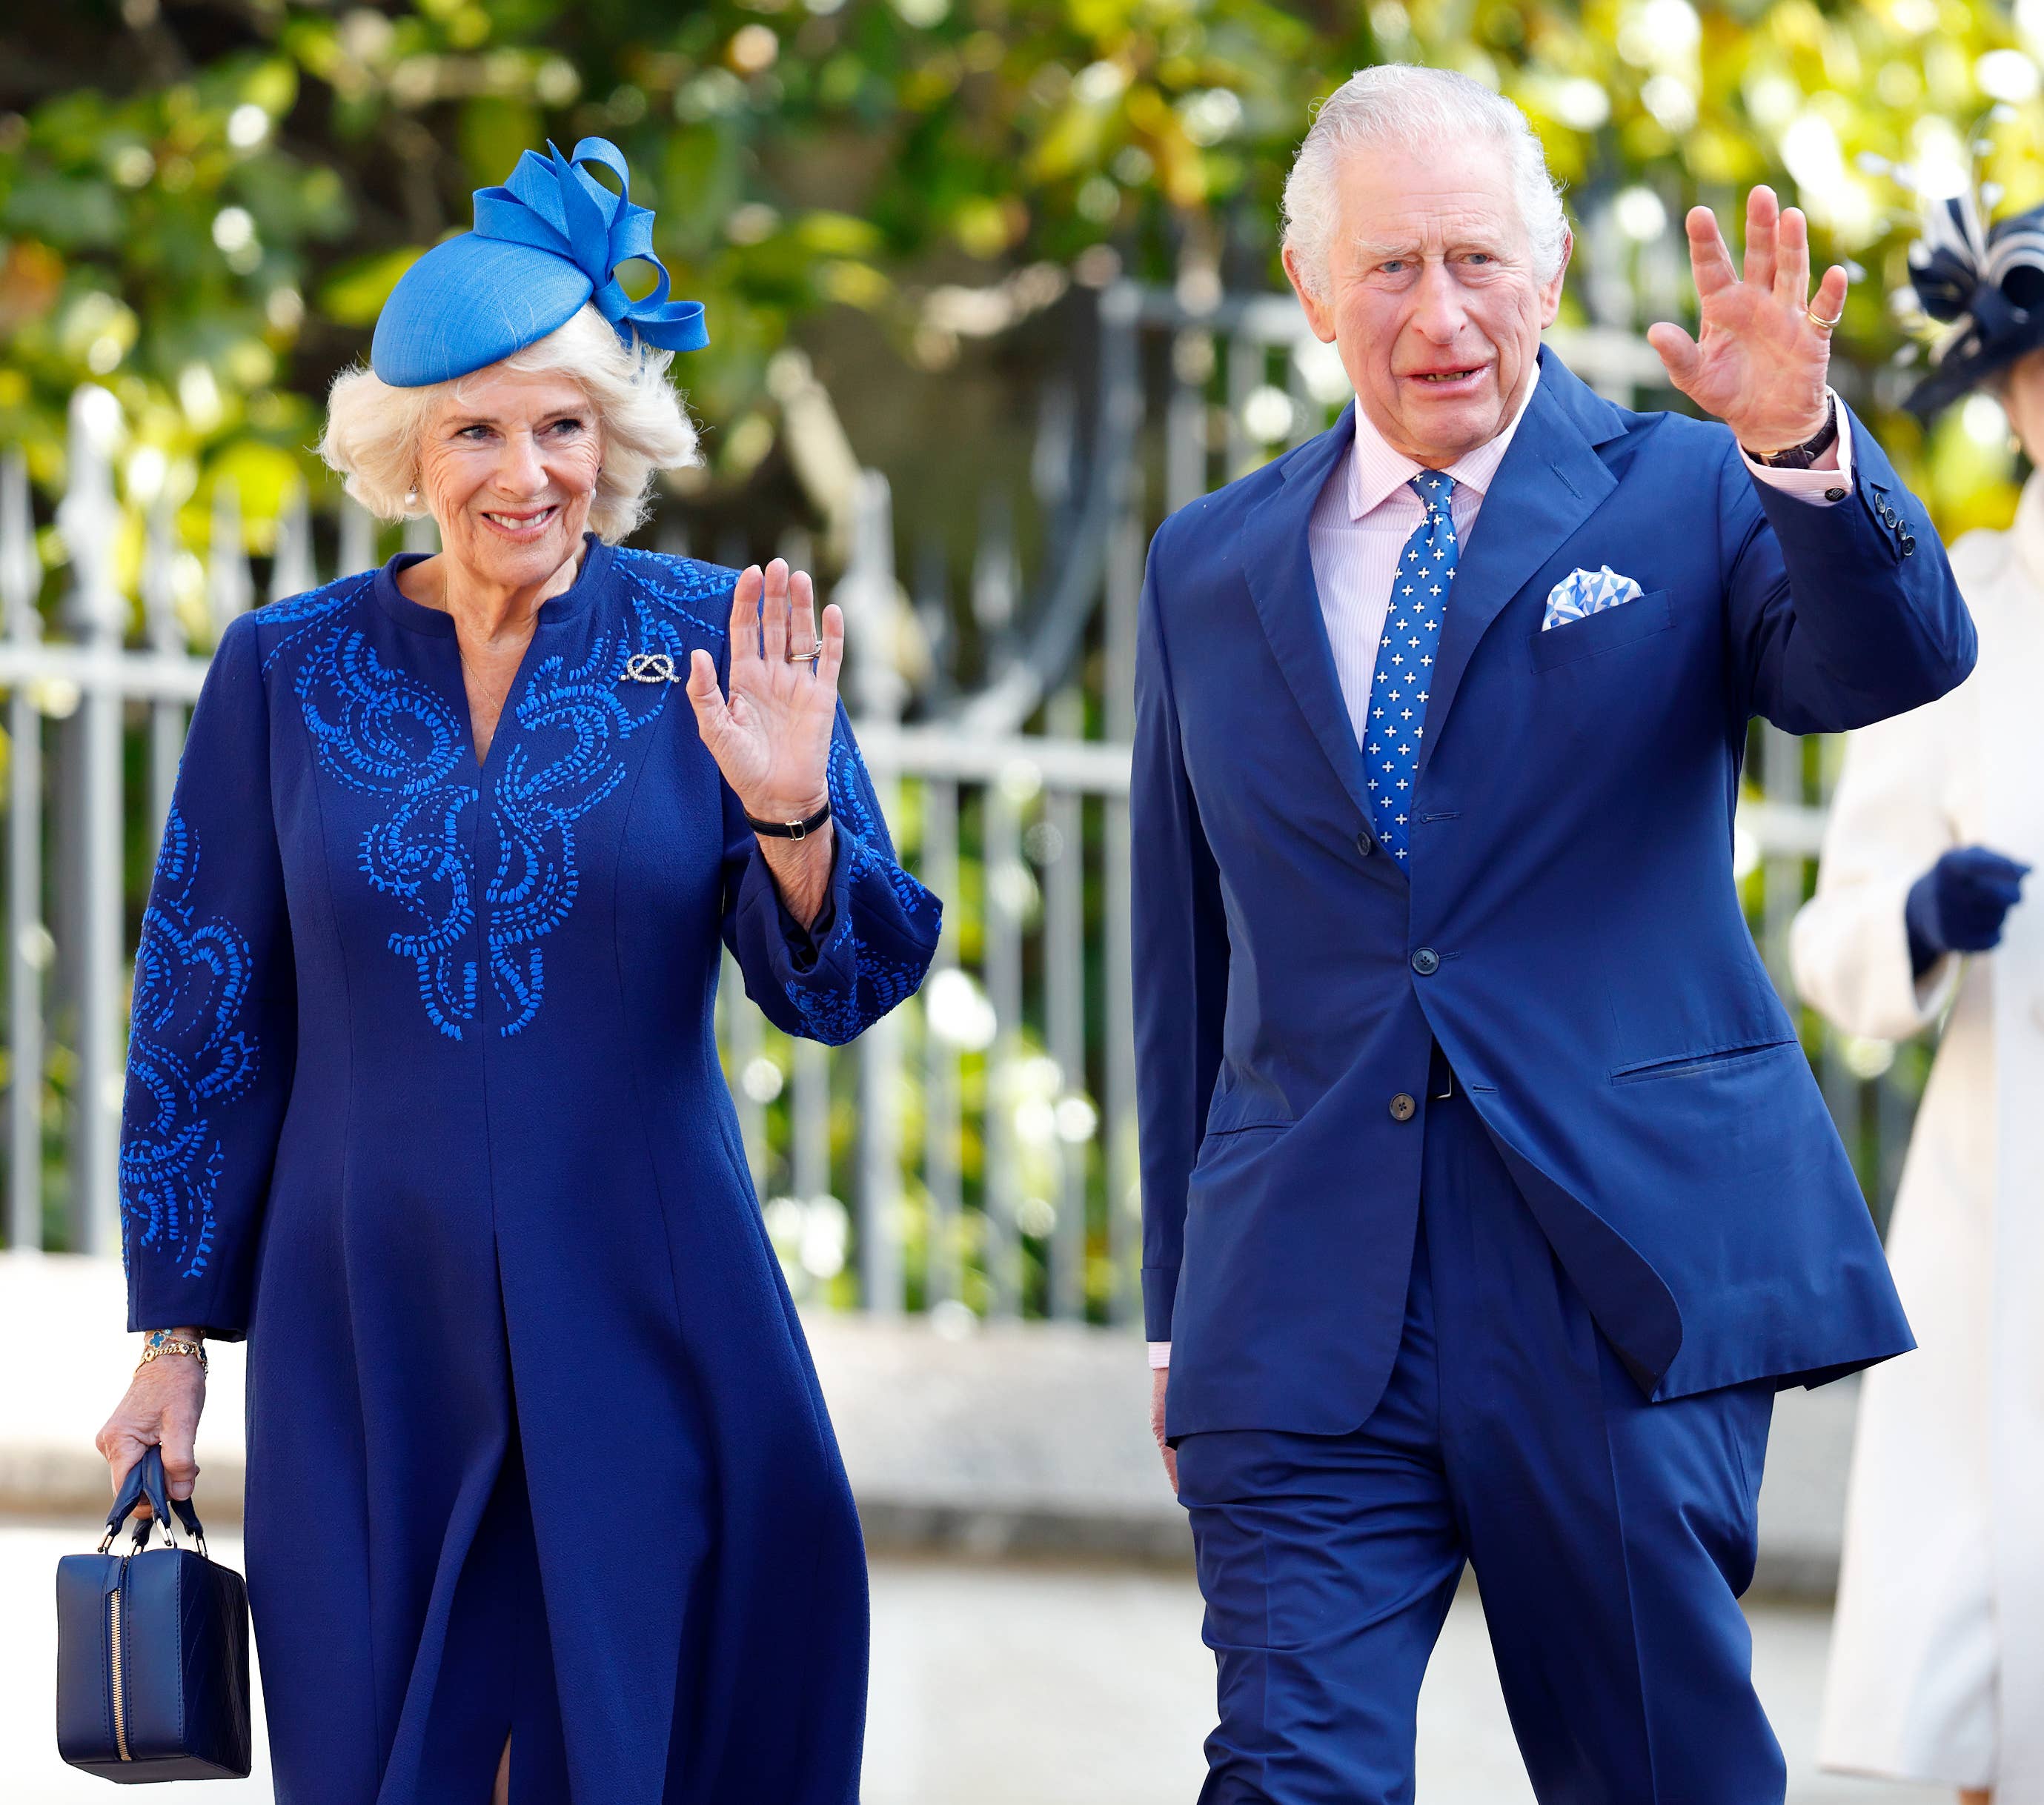 King Charles and Camilla waving